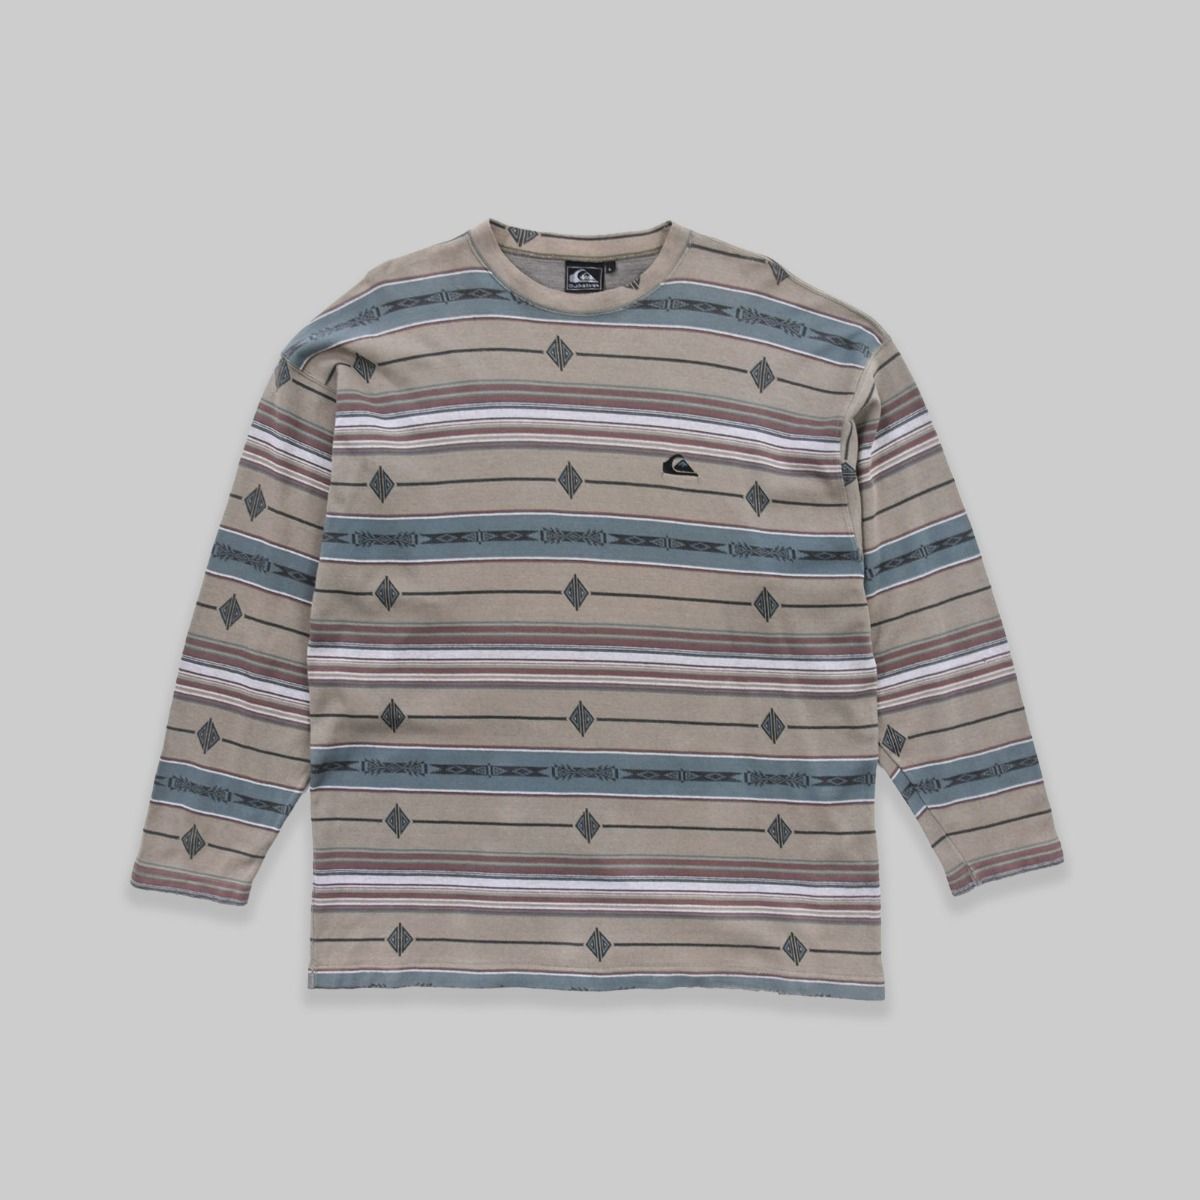 Quiksilver 1990s Sweatshirt